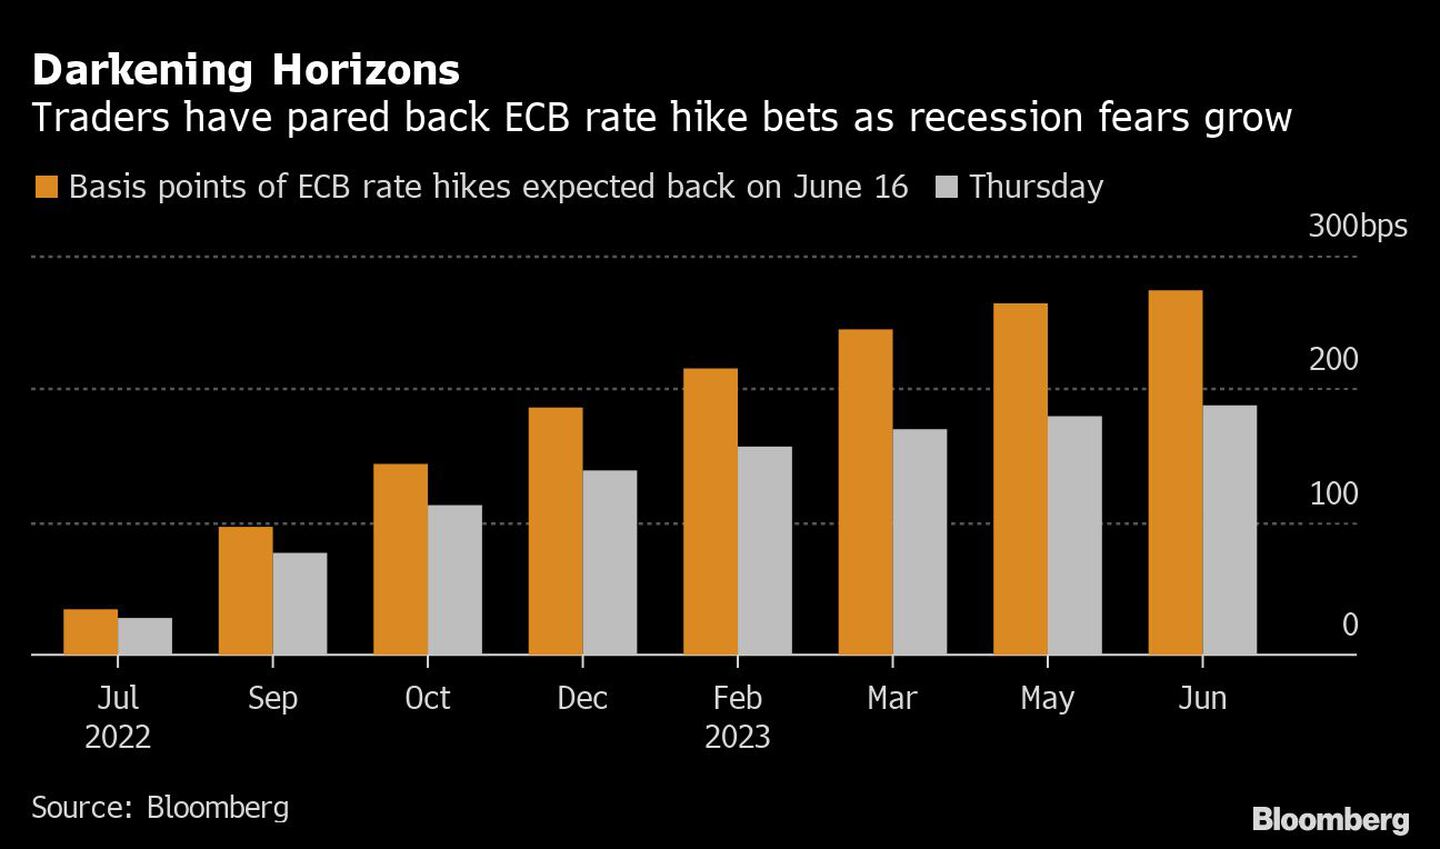 Horizontes más oscuros
Los operadores han recortado las apuestas de subida de tipos del BCE ante el aumento de los temores de recesión
Naranja: Se espera que el BCE vuelva a subir los tipos en puntos básicos el 16 de junio
Gris: Juevesdfd